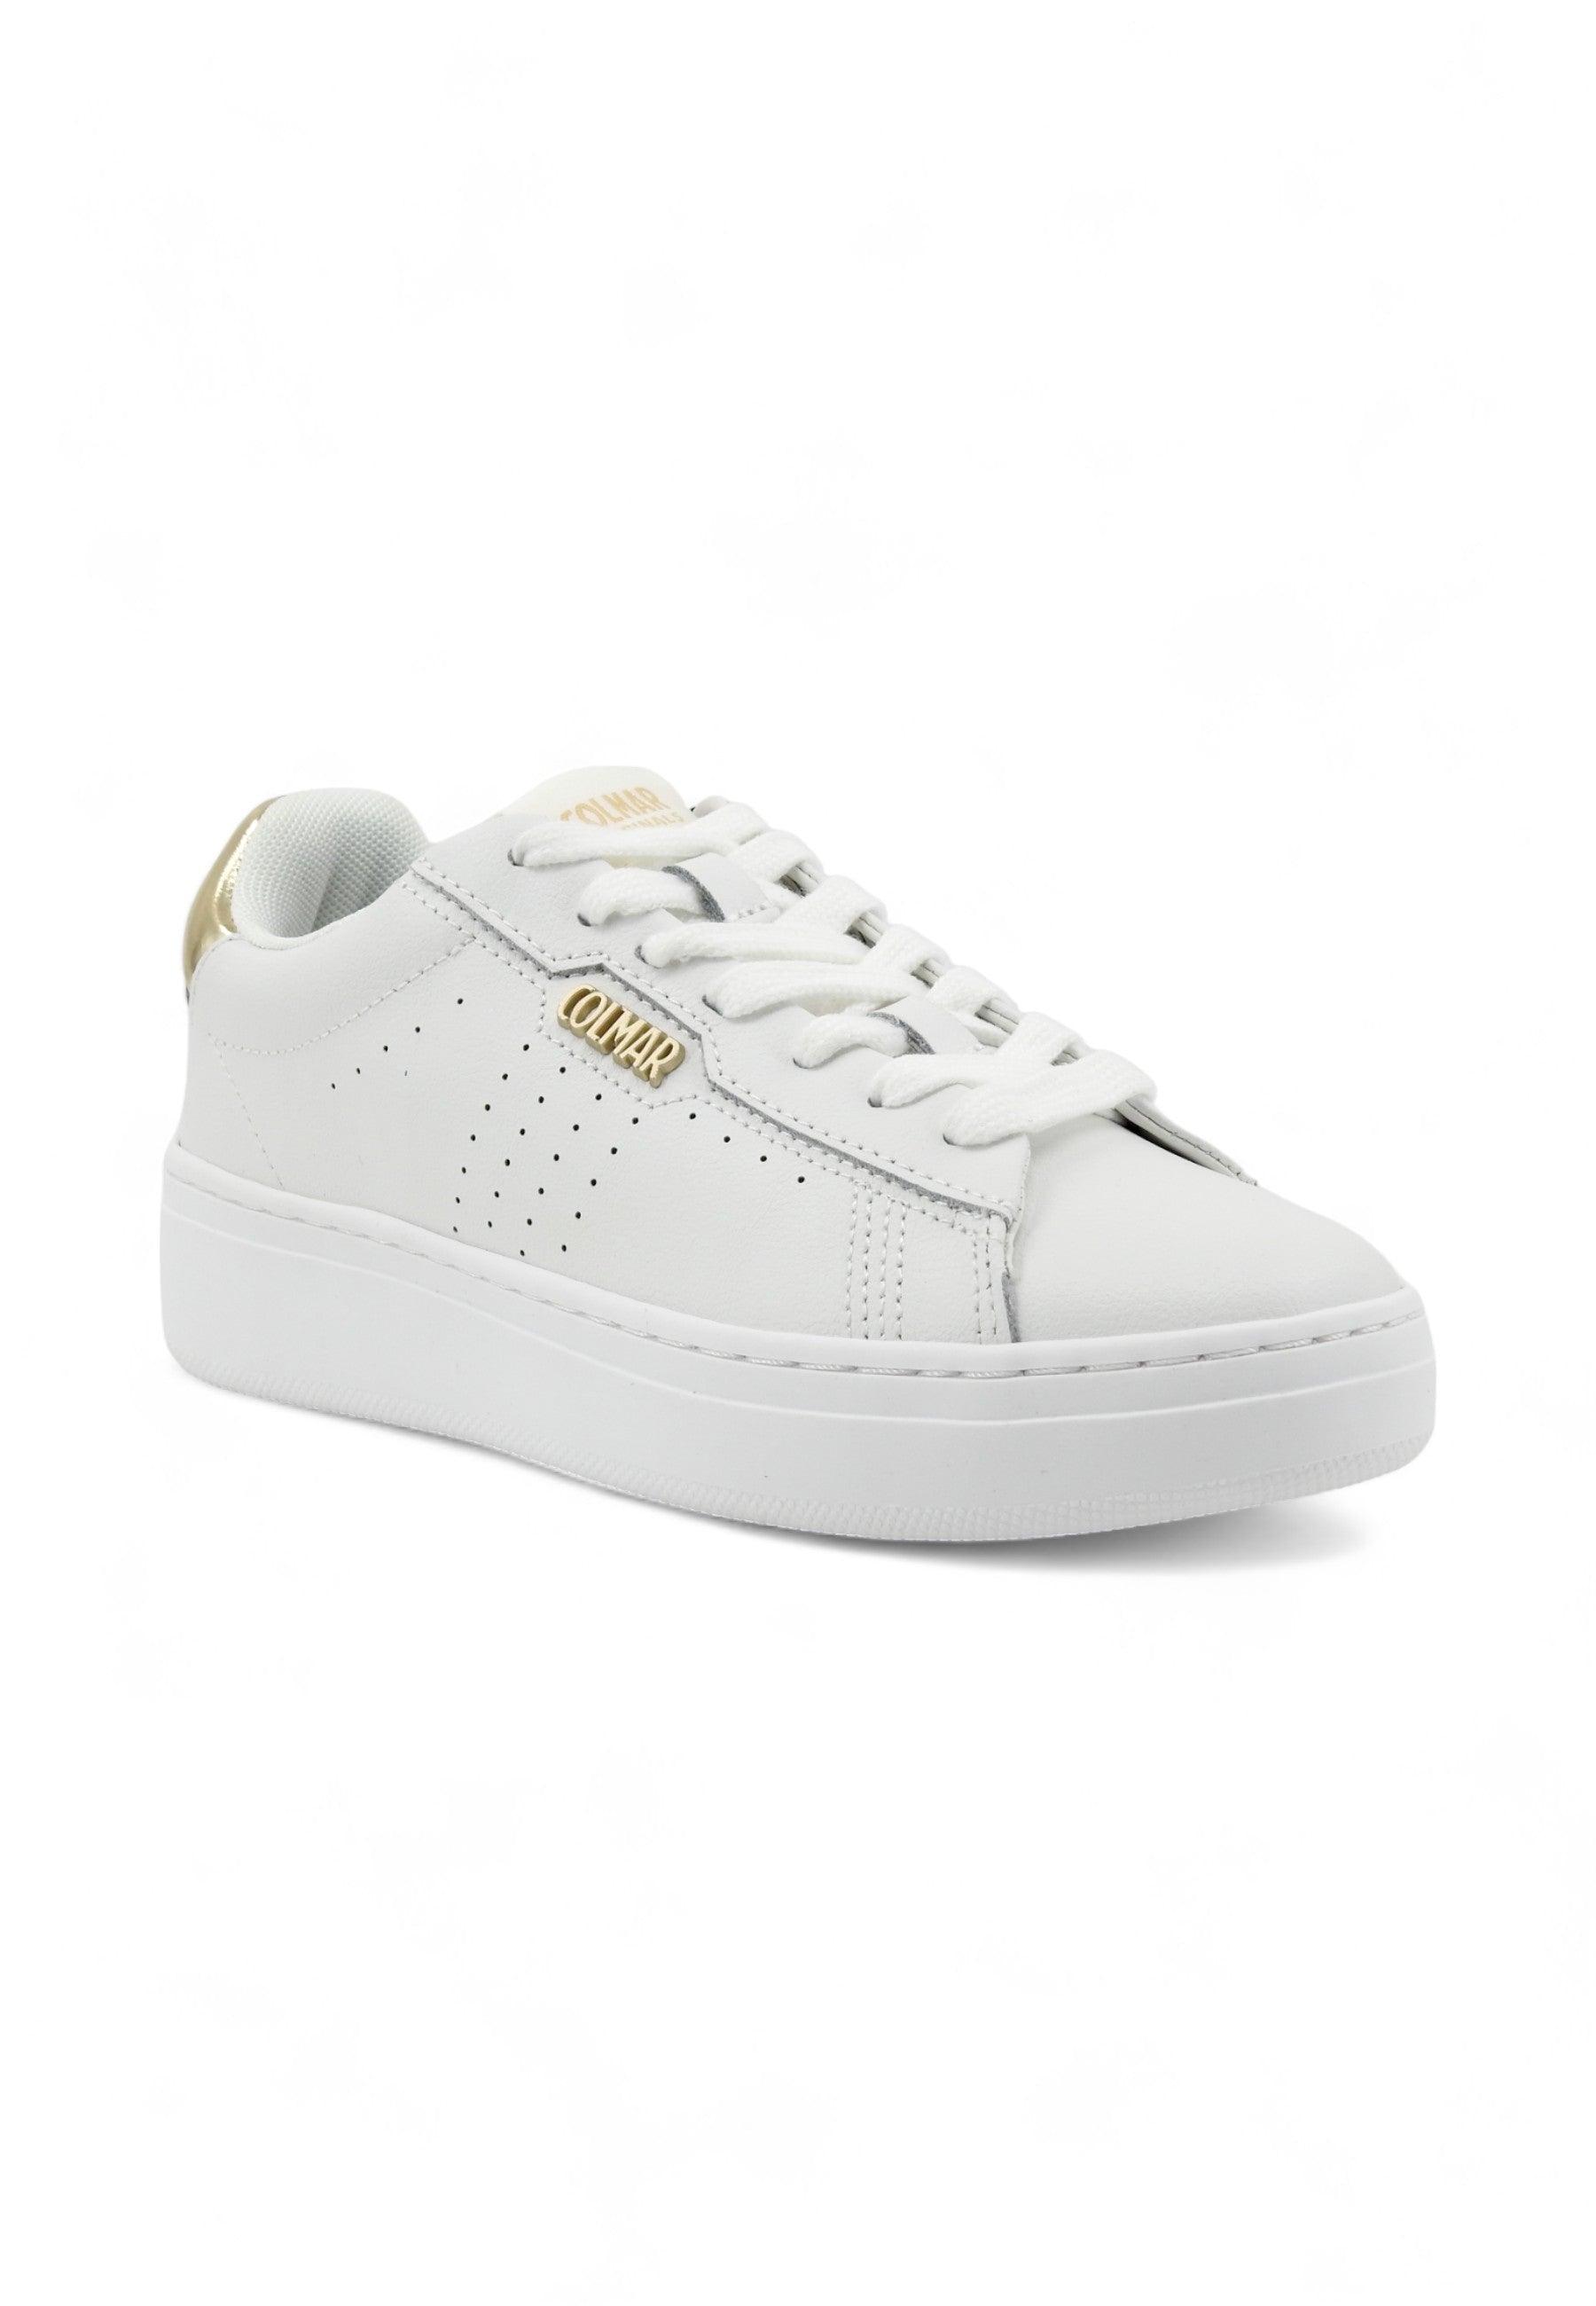 COLMAR Sneaker Donna White Gold BATES GLAM - Sandrini Calzature e Abbigliamento